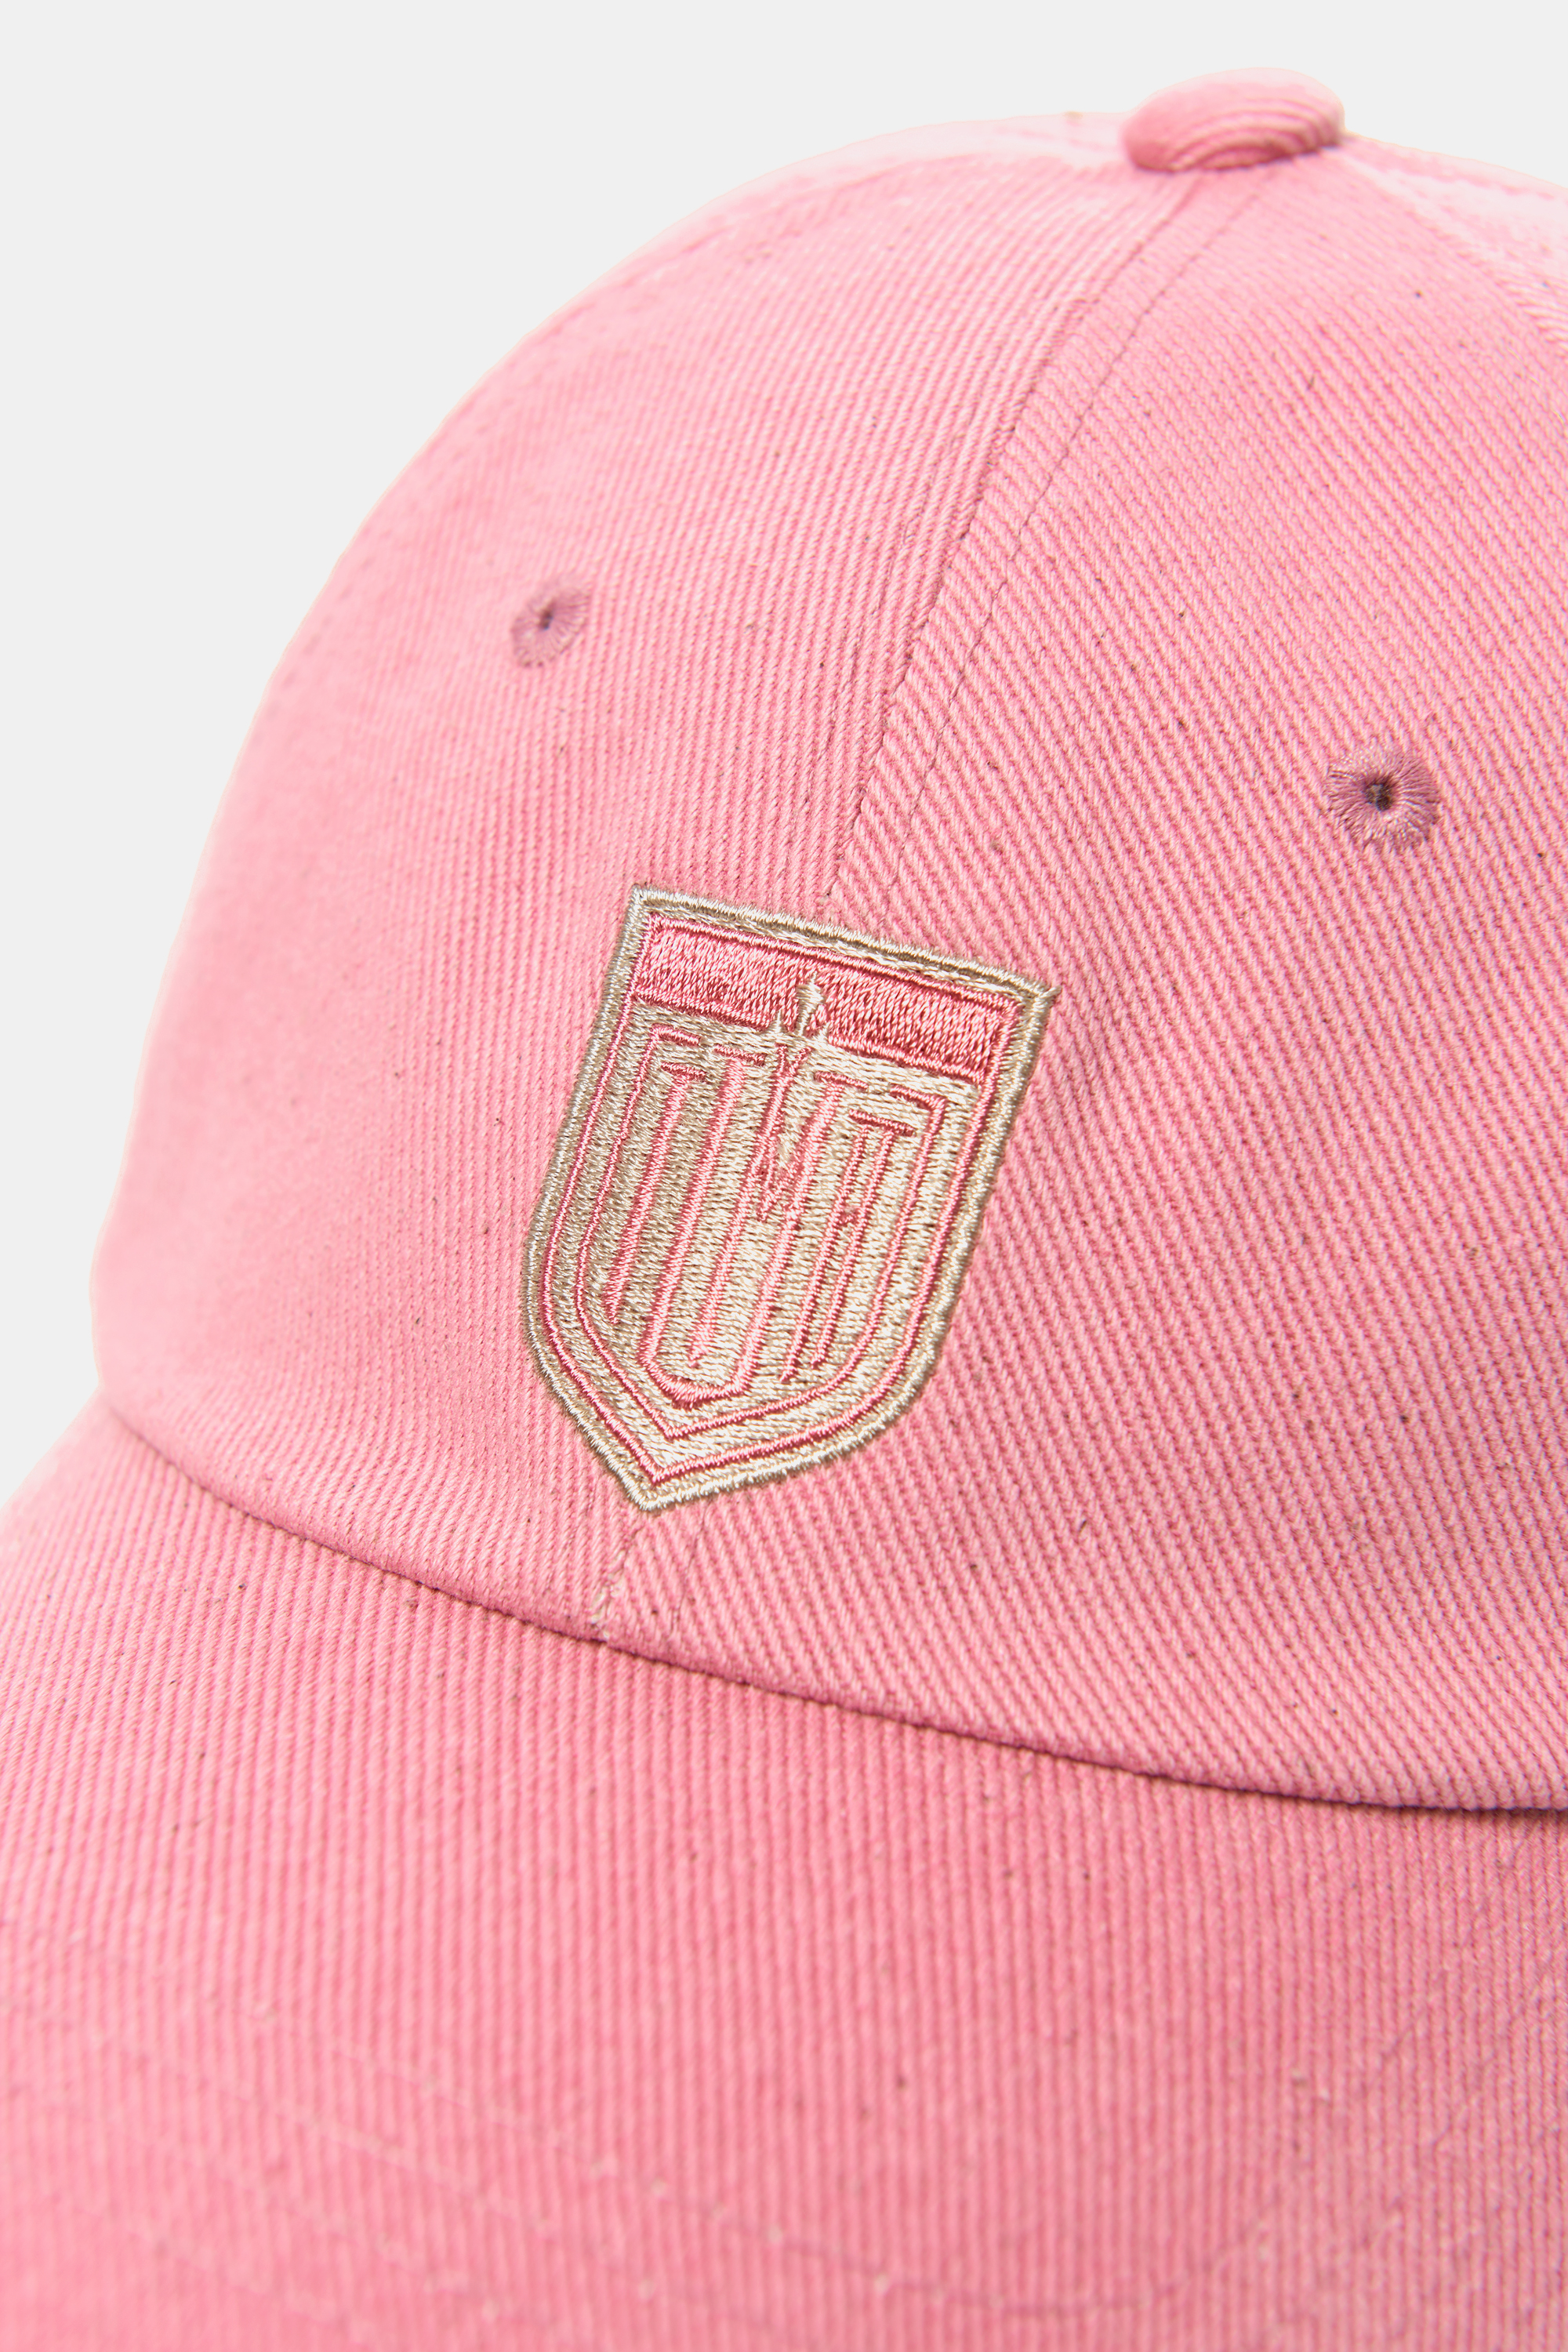 EMBLEM VINTAGE BALL CAP pink